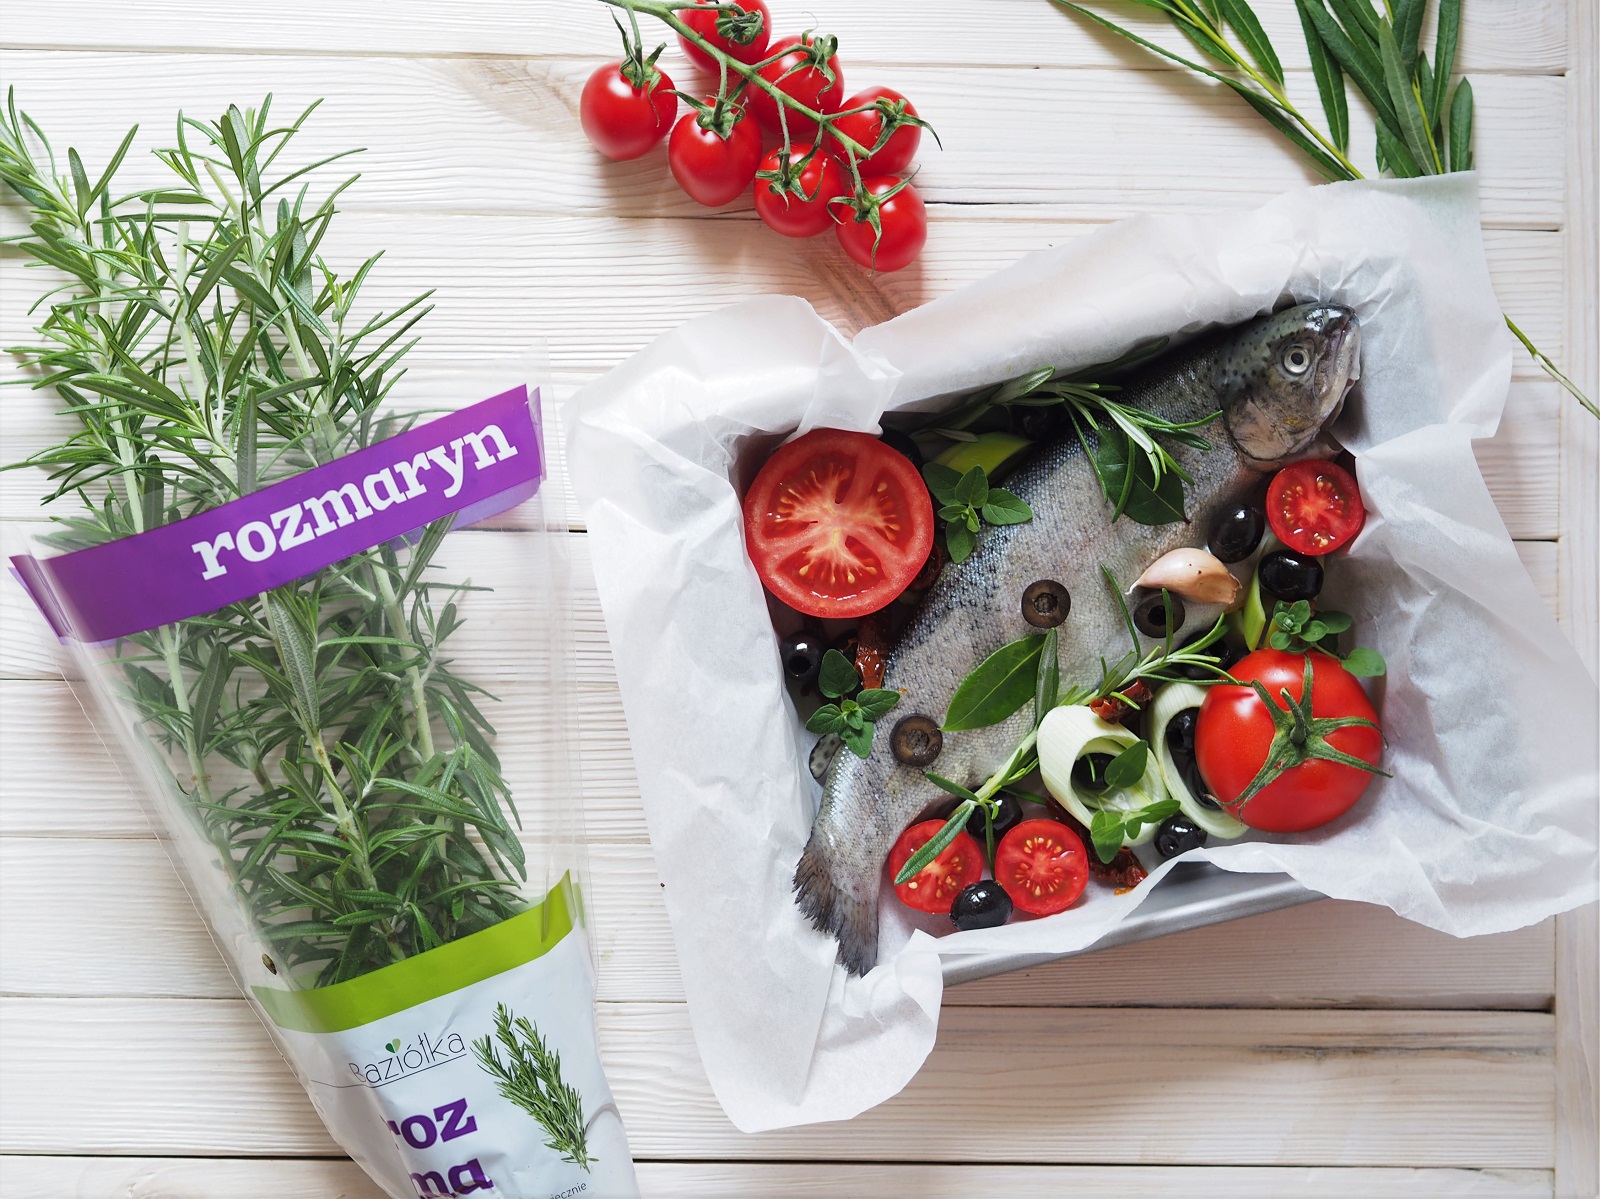 Ryba po grecku, czyli nadziewana oliwkami, kaparami, ziołami, zapiekana z pomidorami i porem